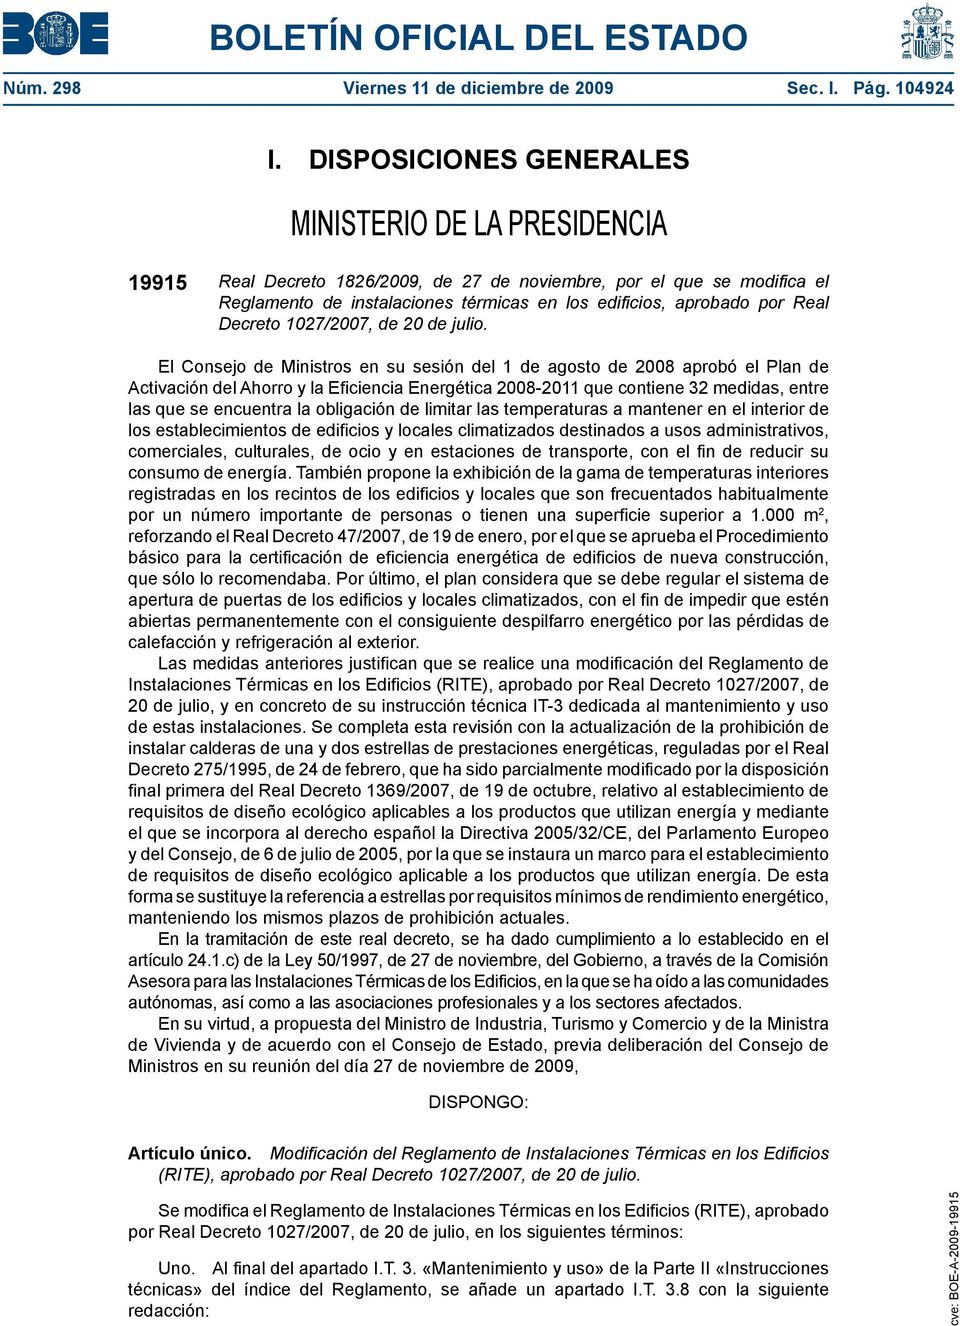 Real Decreto 1027/2007, de 20 de julio.